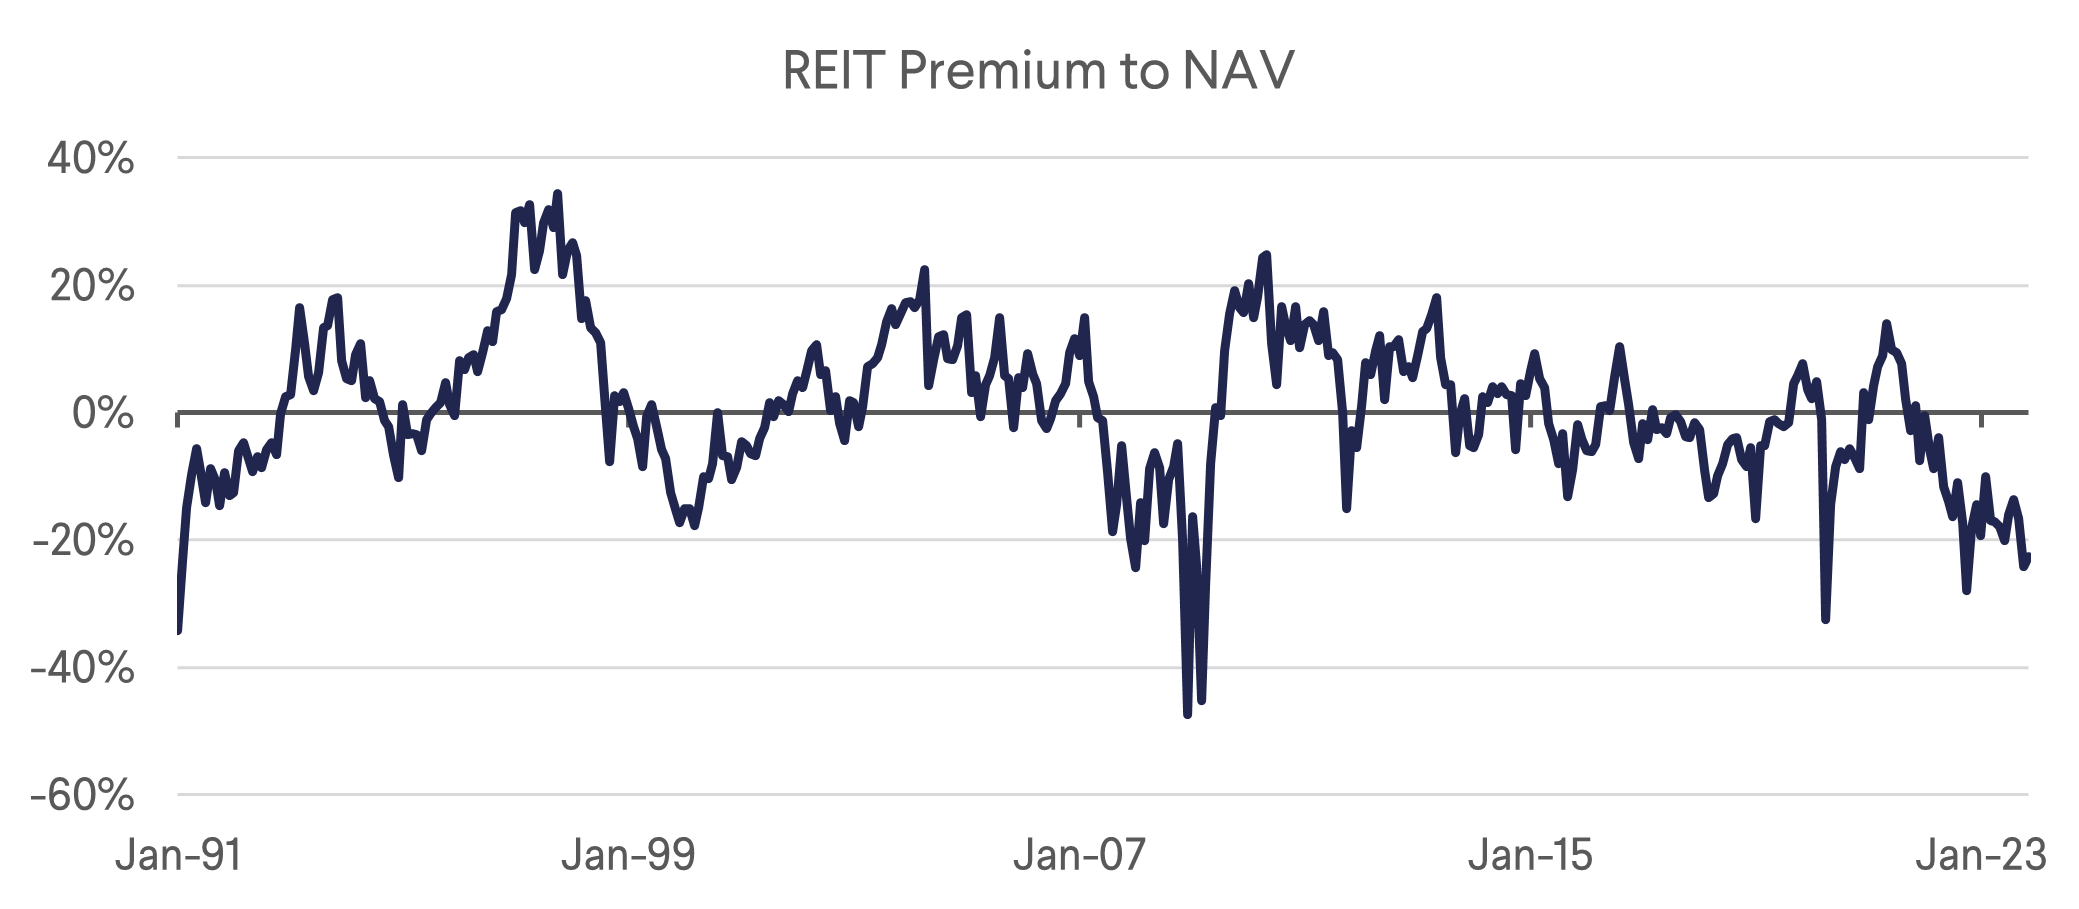 REIT Premium to NAV